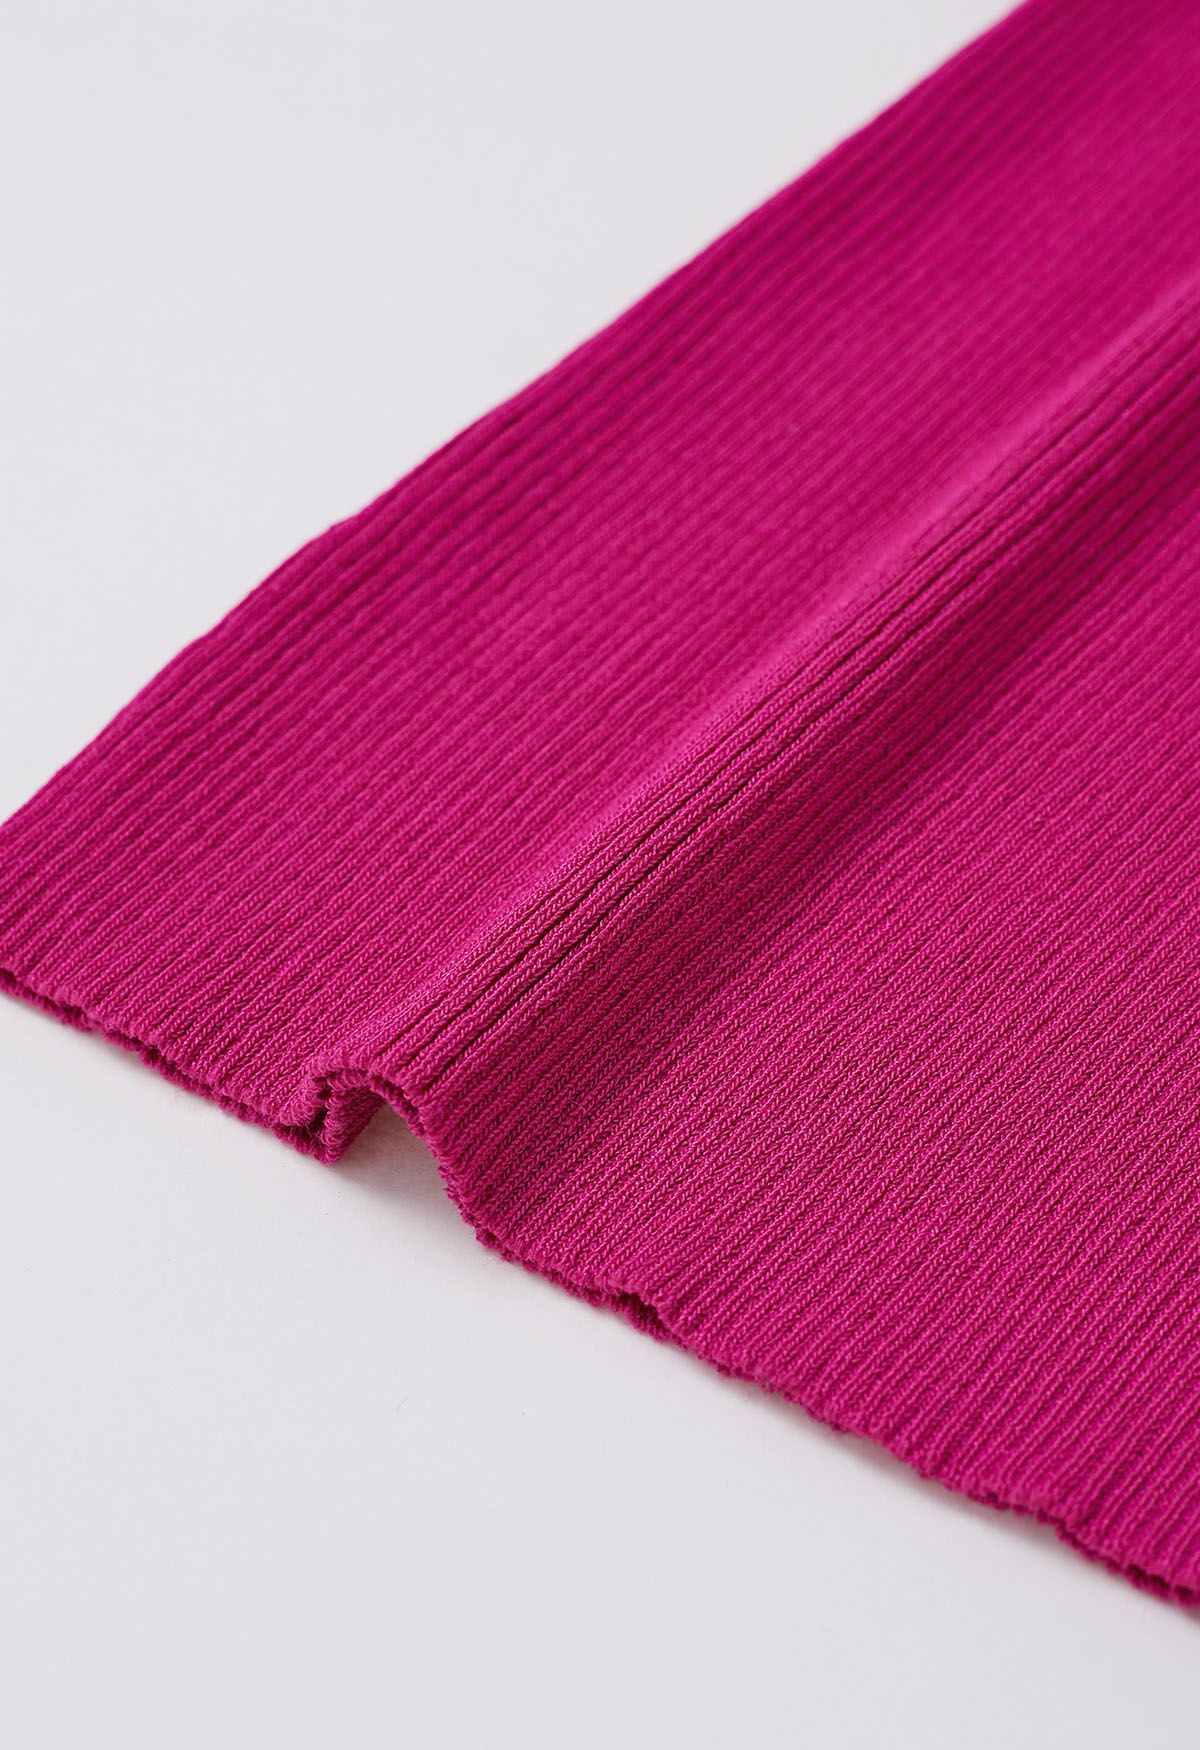 بلوزة متماسكة بأكمام شبكية ثلاثية الأبعاد باللون الوردي الفاقع